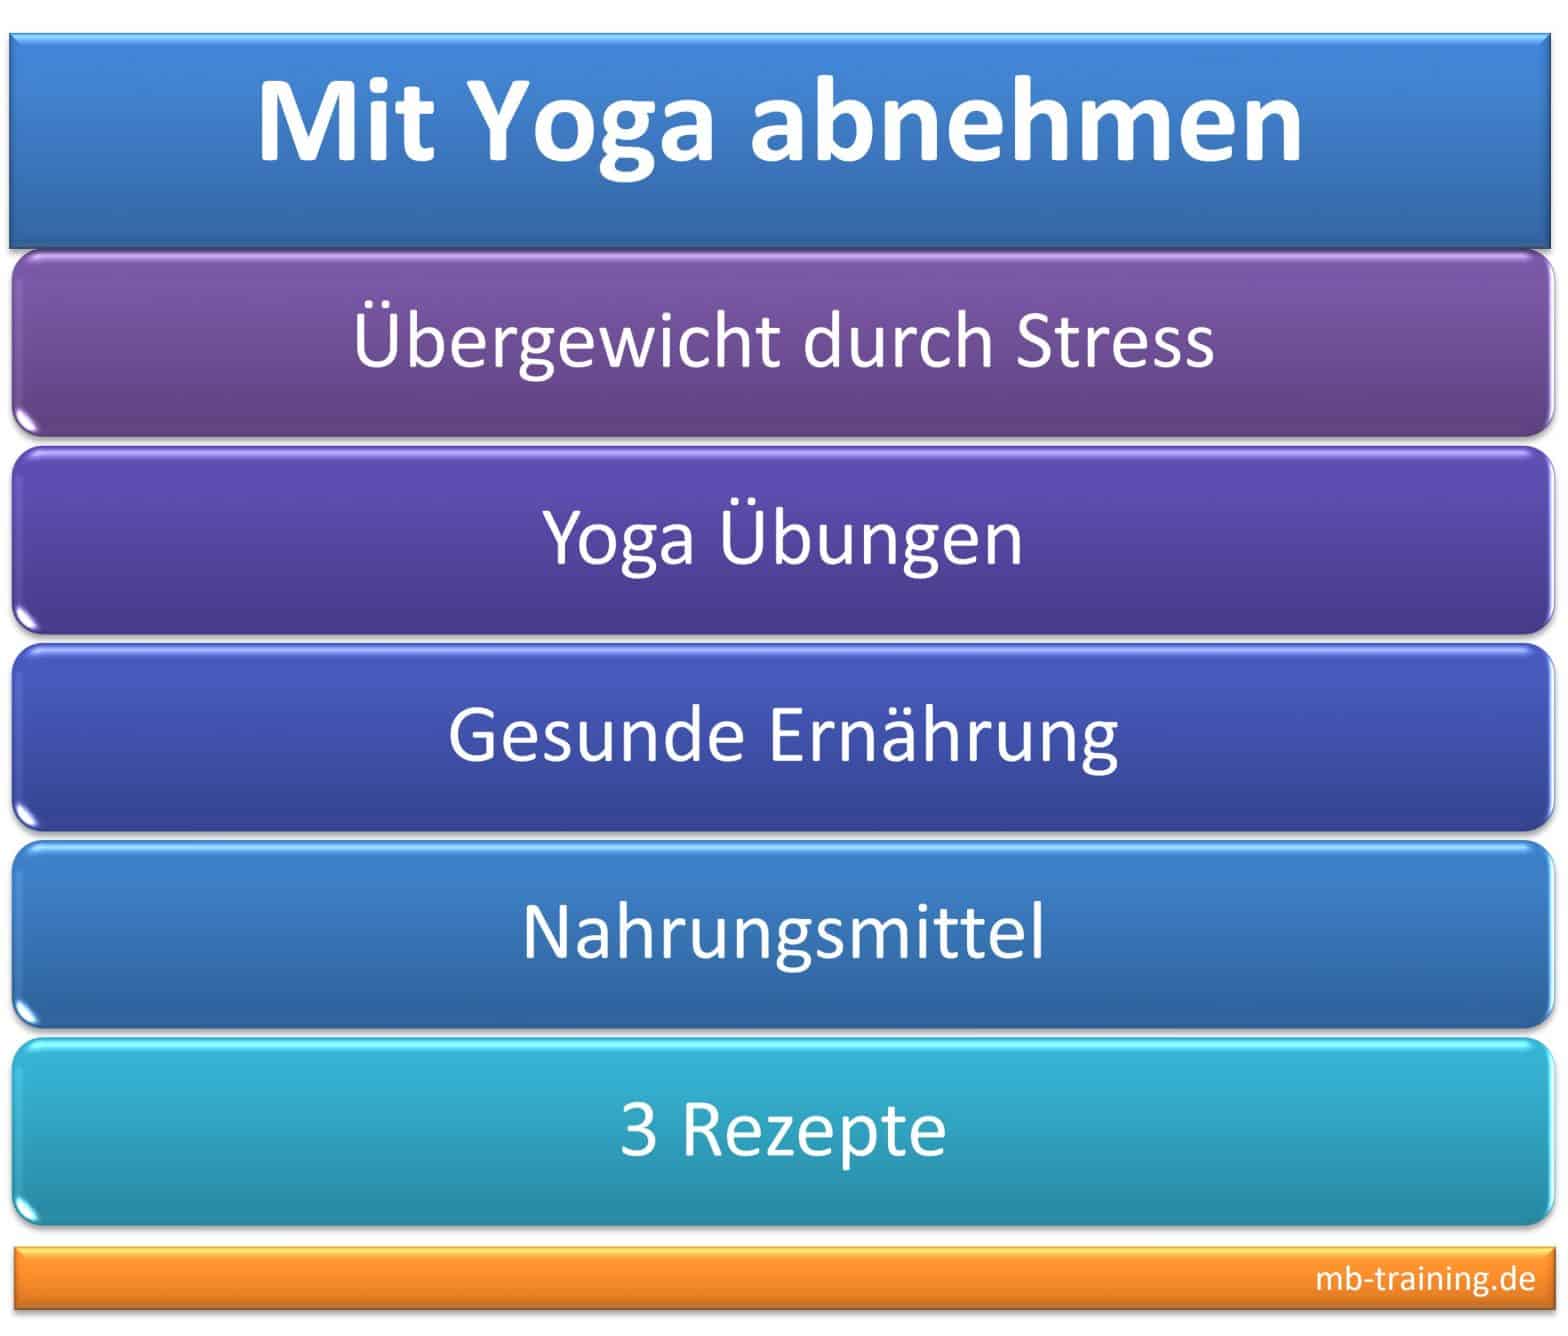 Yoga Abnehmen, Übungen gegen Stress, sattvische Ernährung, 3 Rezepte für gesunde Ernährung, gute und schlechte Nahrungsmittel, Übergewicht.